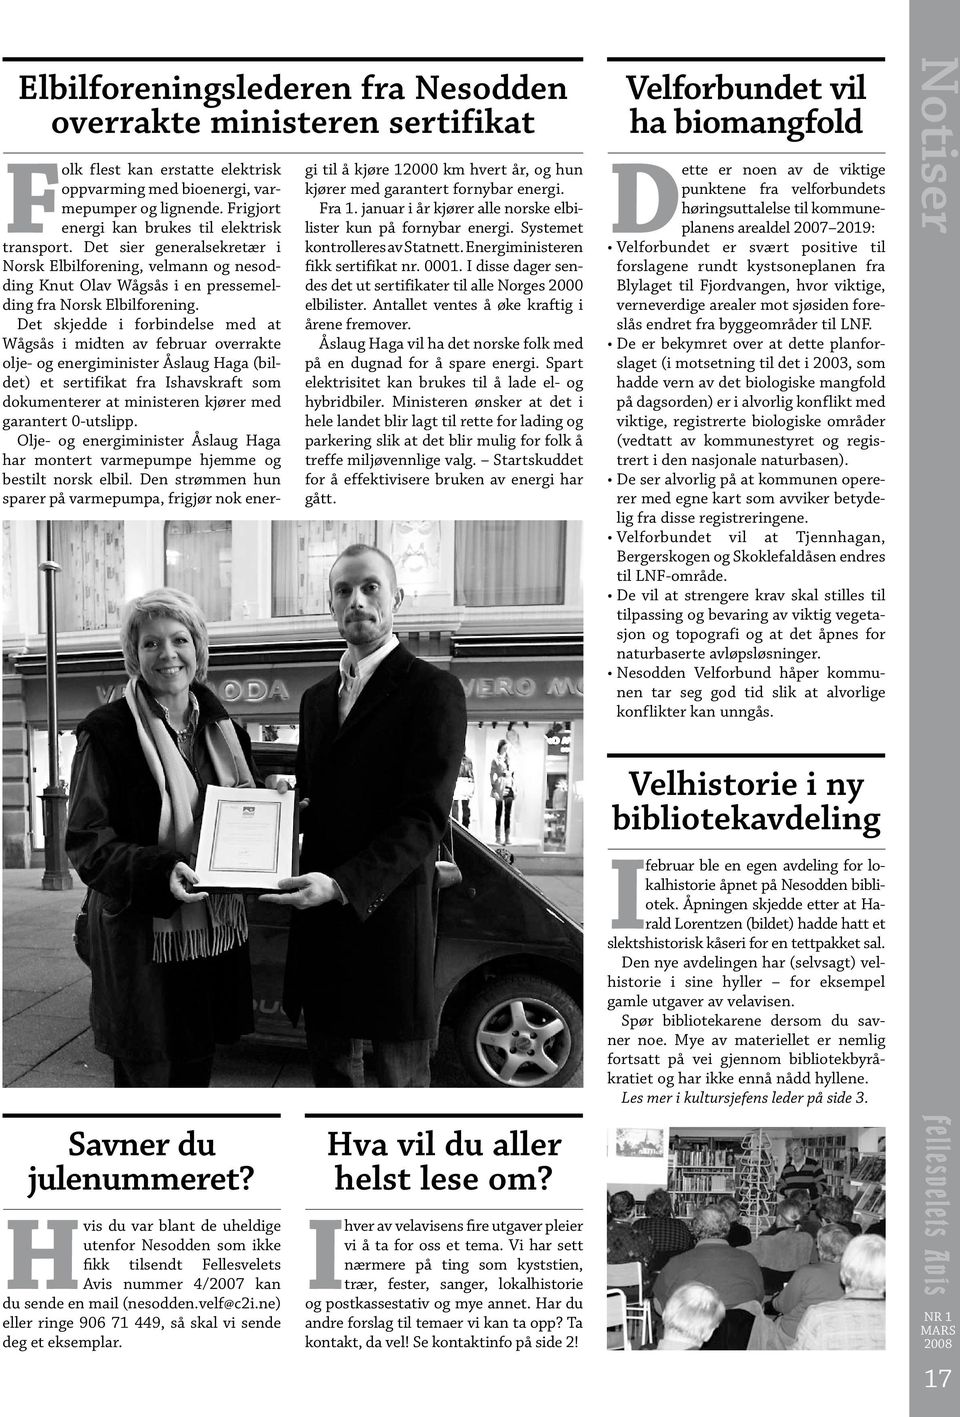 Det skjedde i forbindelse med at Wågsås i midten av februar overrakte olje- og energiminister Åslaug Haga (bildet) et sertifikat fra Ishavskraft som dokumenterer at ministeren kjører med garantert